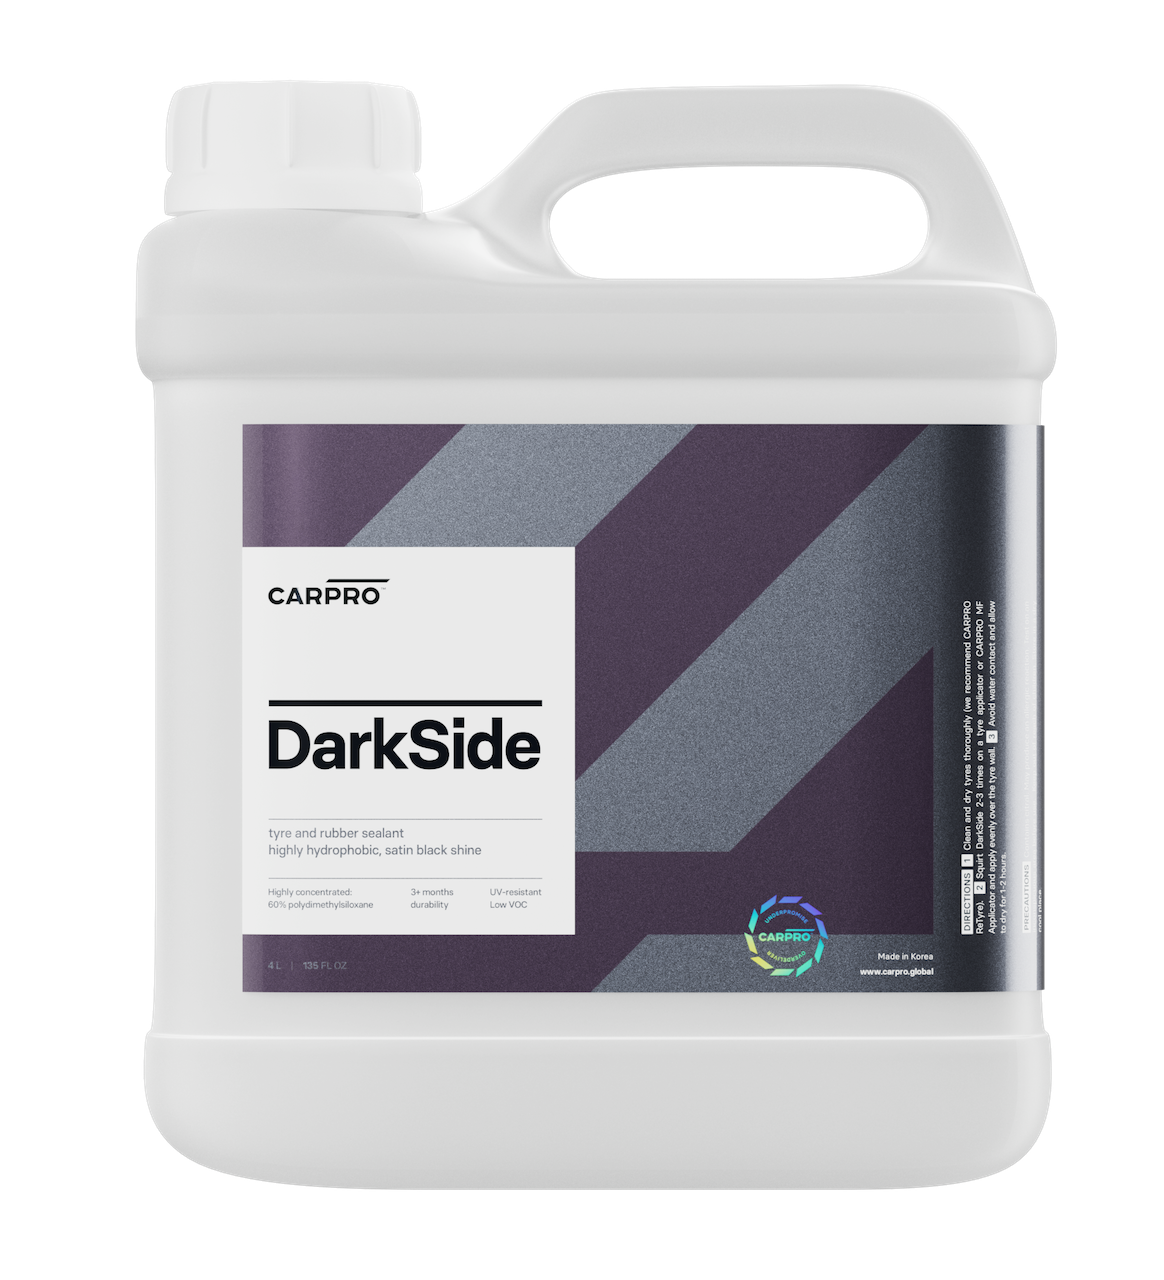 CARPRO DarkSide Tire & Rubber Sealant 1 Gallon